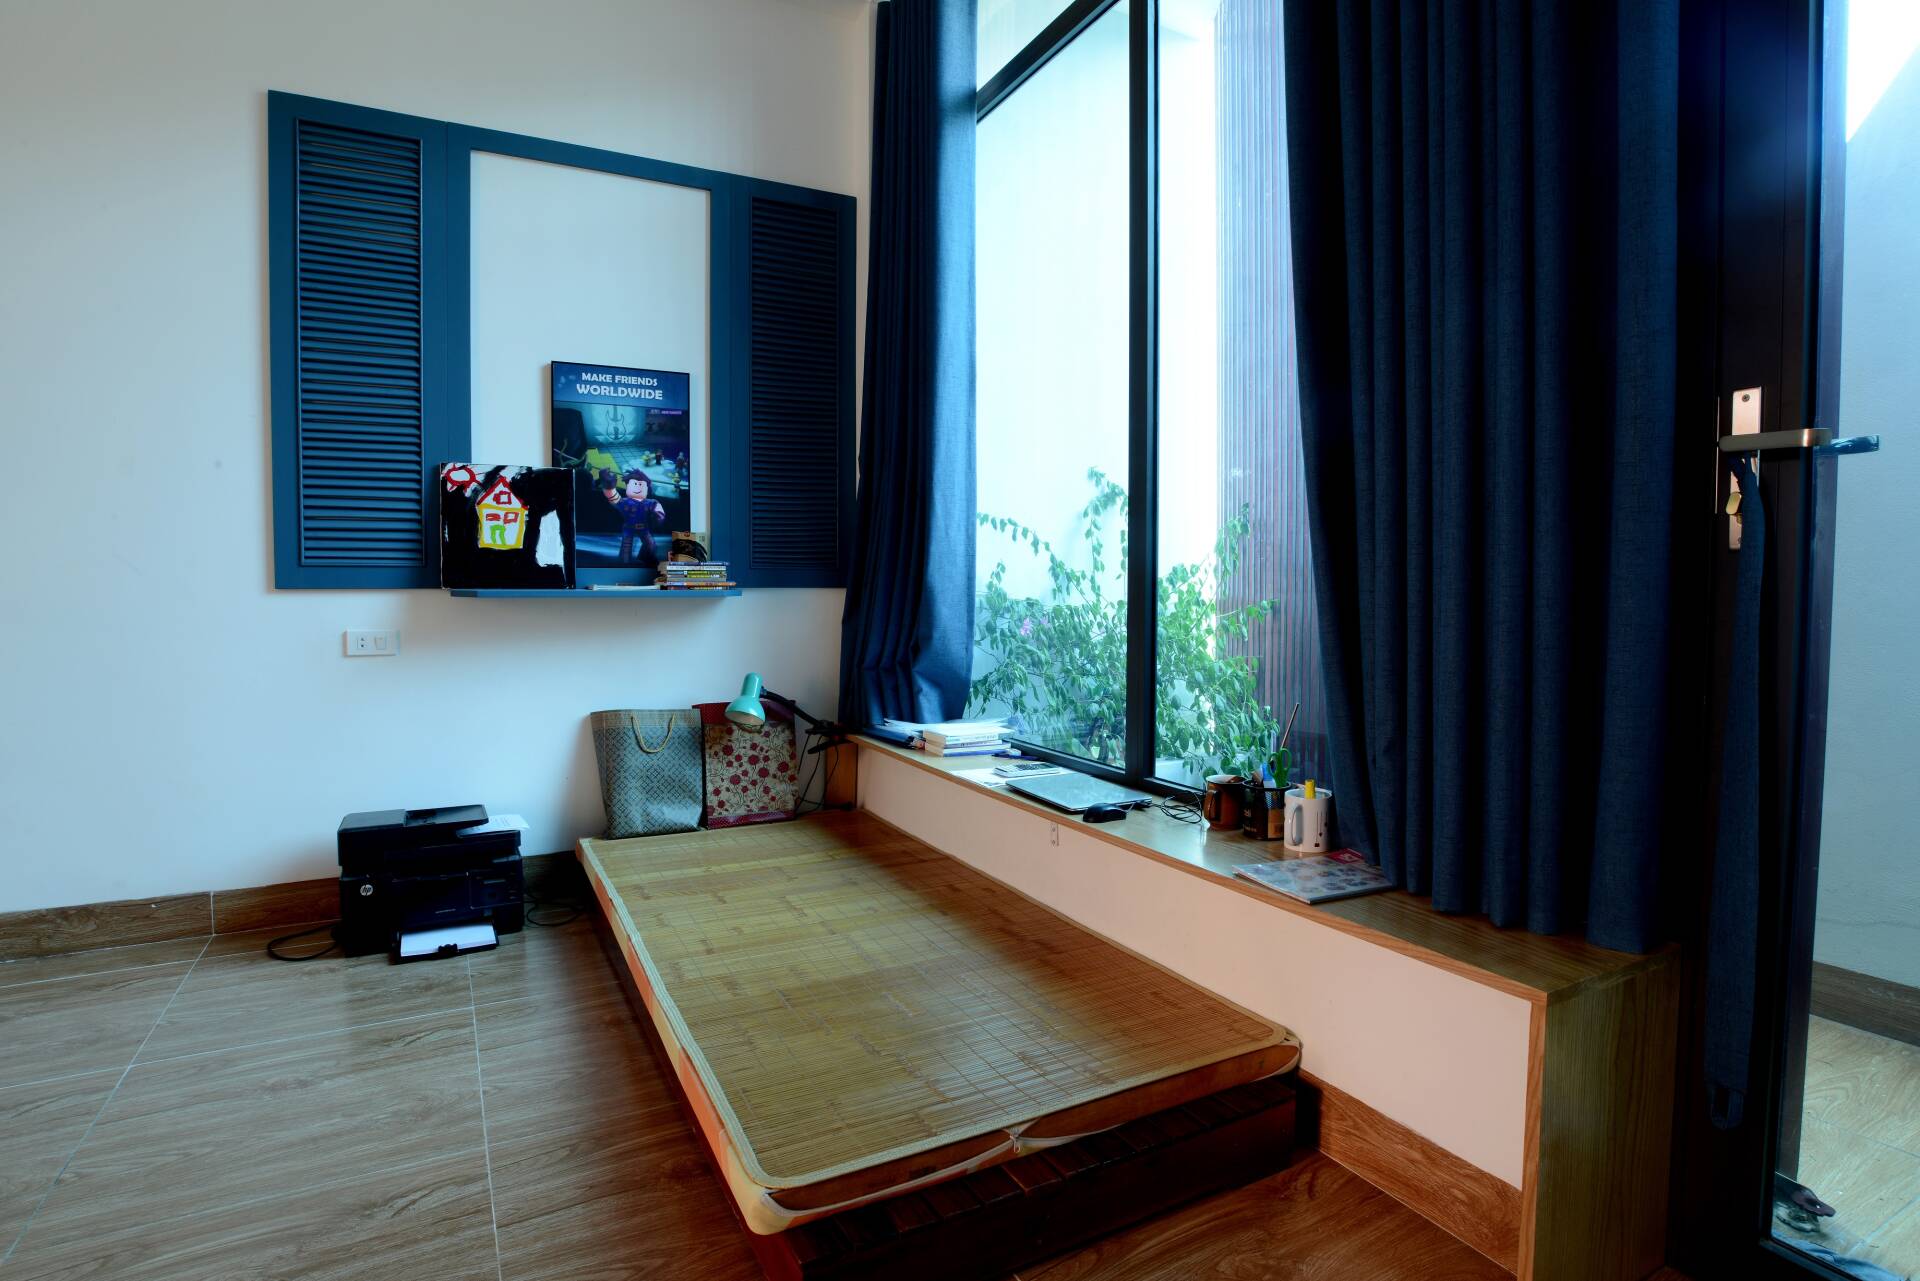 Đồ nội thất không cầu kỳ mà chỉ giản dị, tận dụng không gian xanh ở khắp mọi nơi